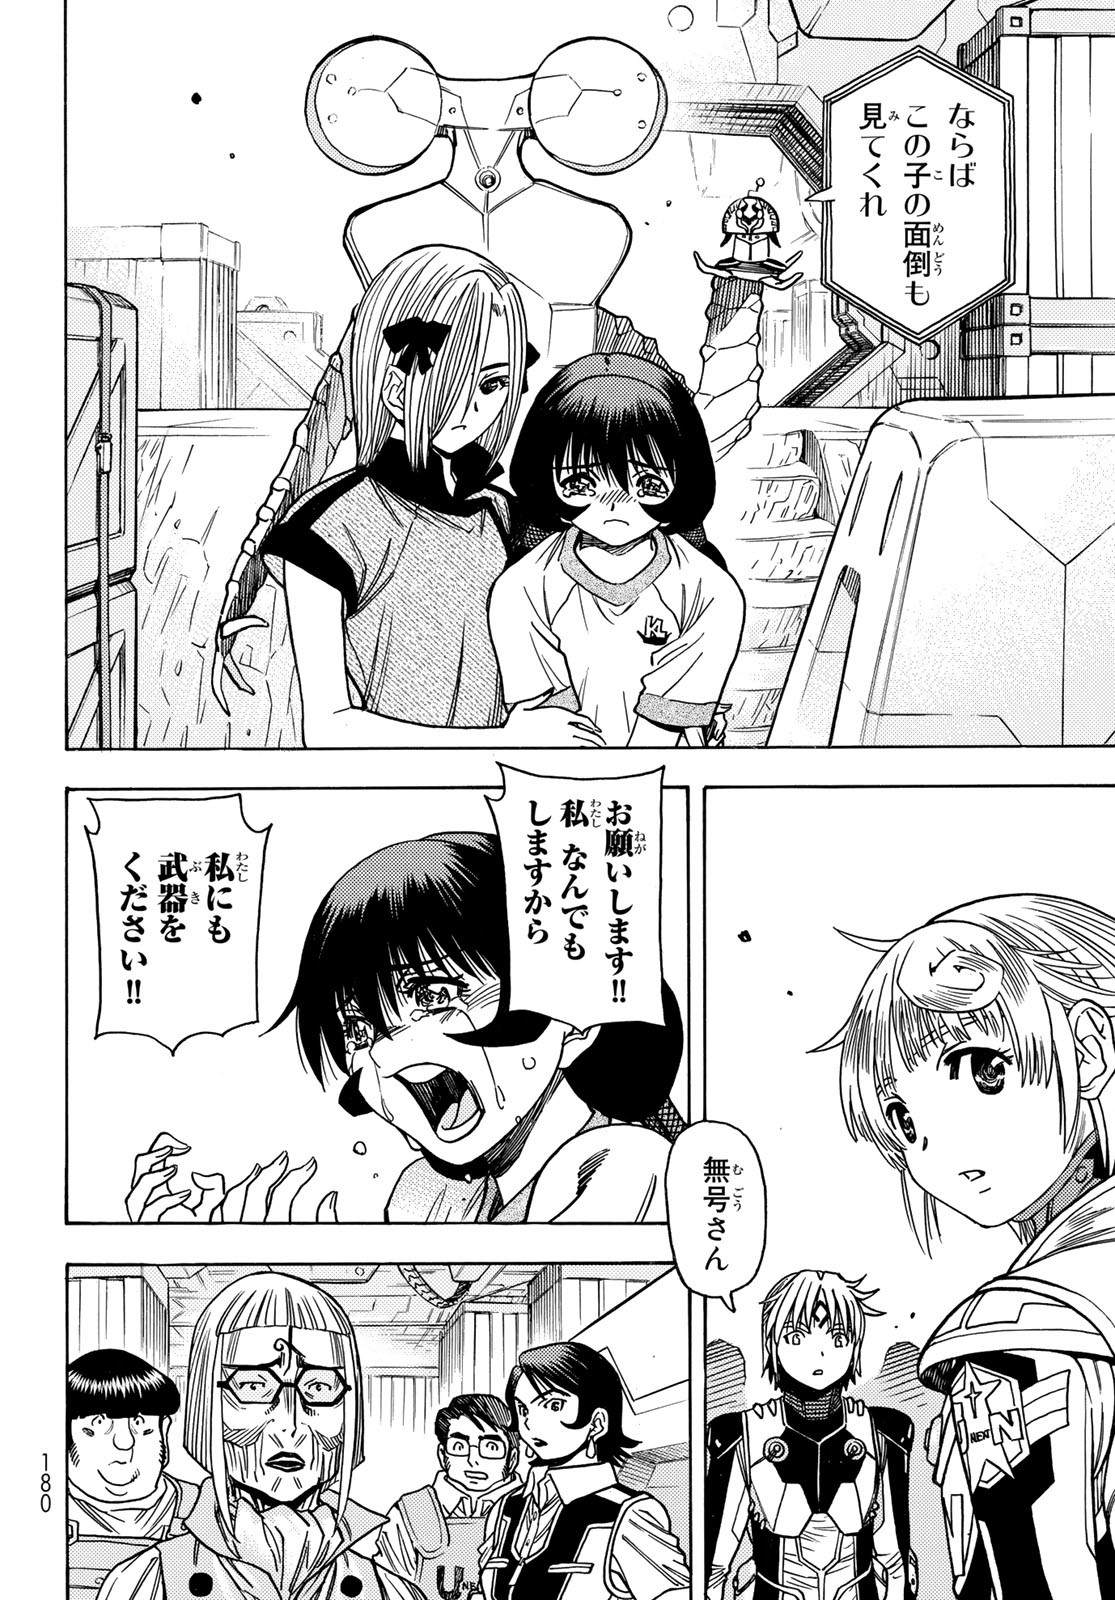 Mugou no Schnell Gear: Chikyuugai Kisouka AI - Chapter 44 - Page 14